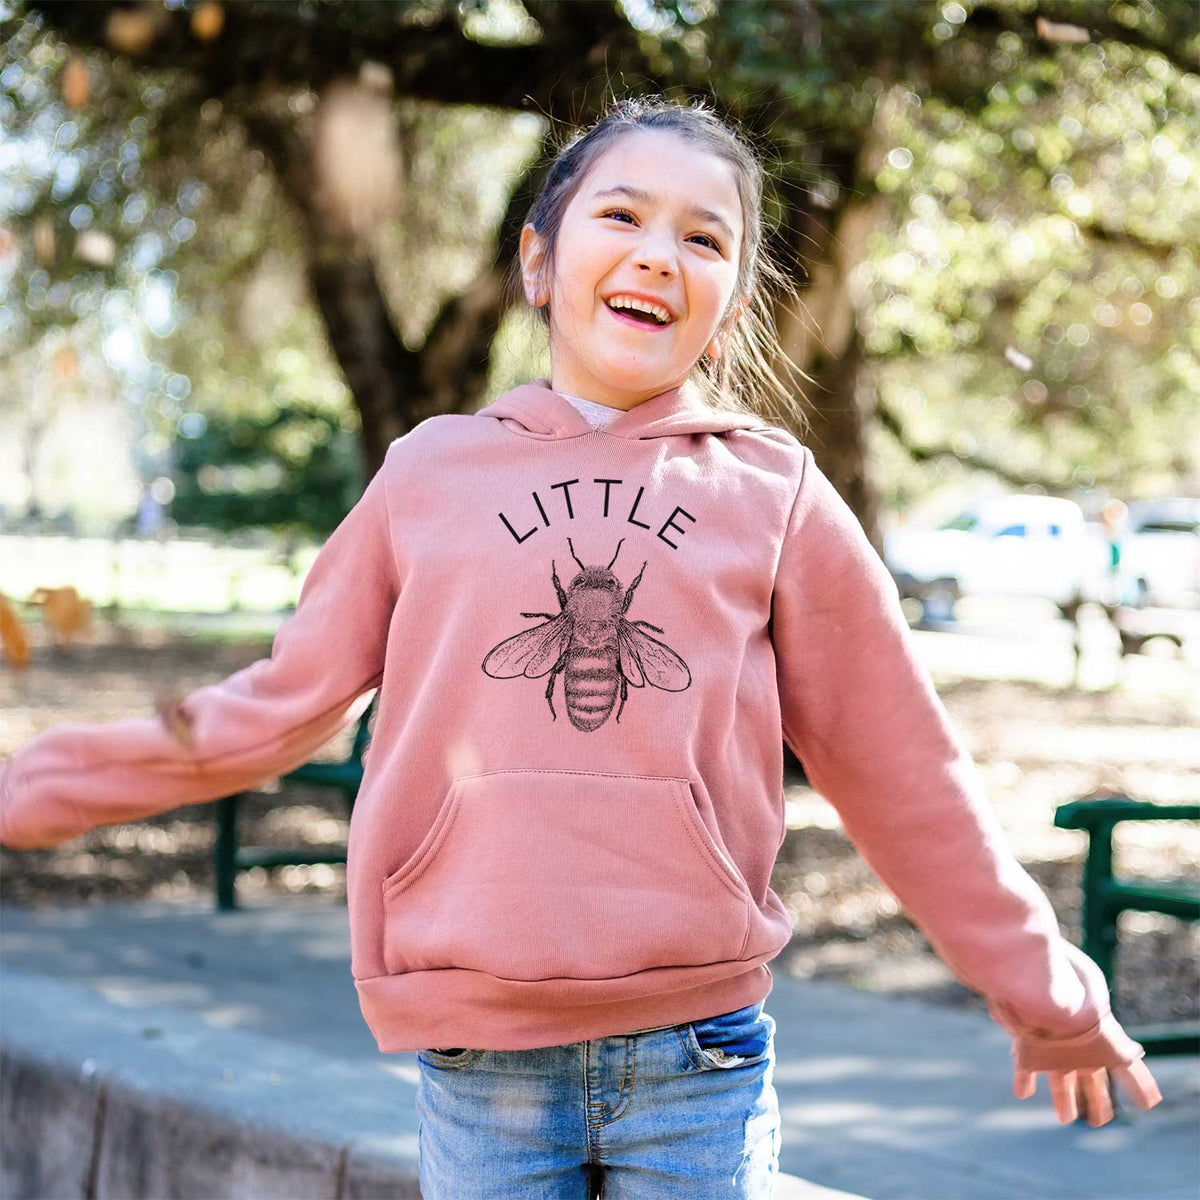 Little Bee - Youth Hoodie Sweatshirt